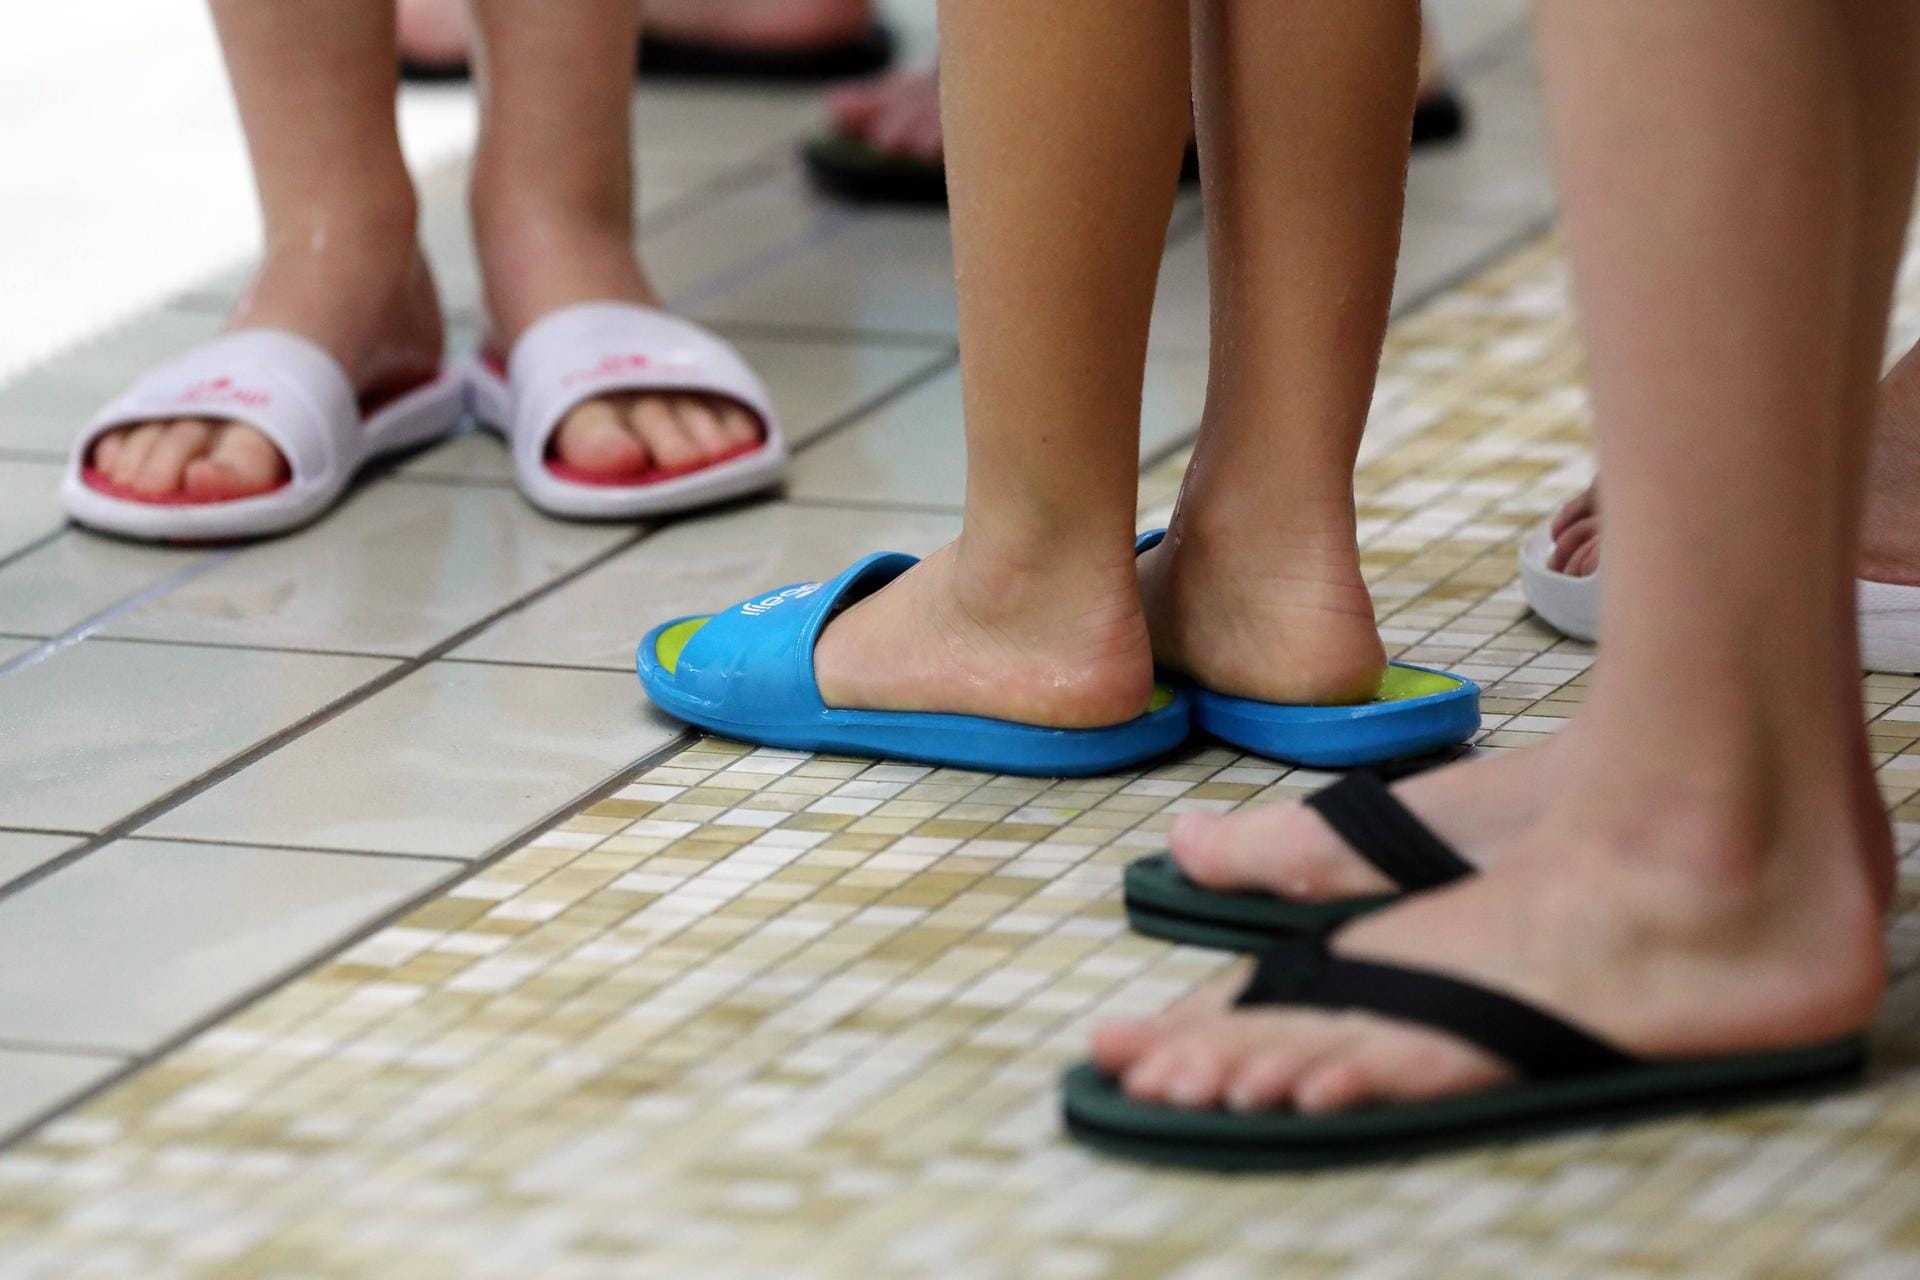 Badelatschen: In öffentlichen Bädern oder Duschen ist die Ansteckungsgefahr mit Fußpilz hoch.